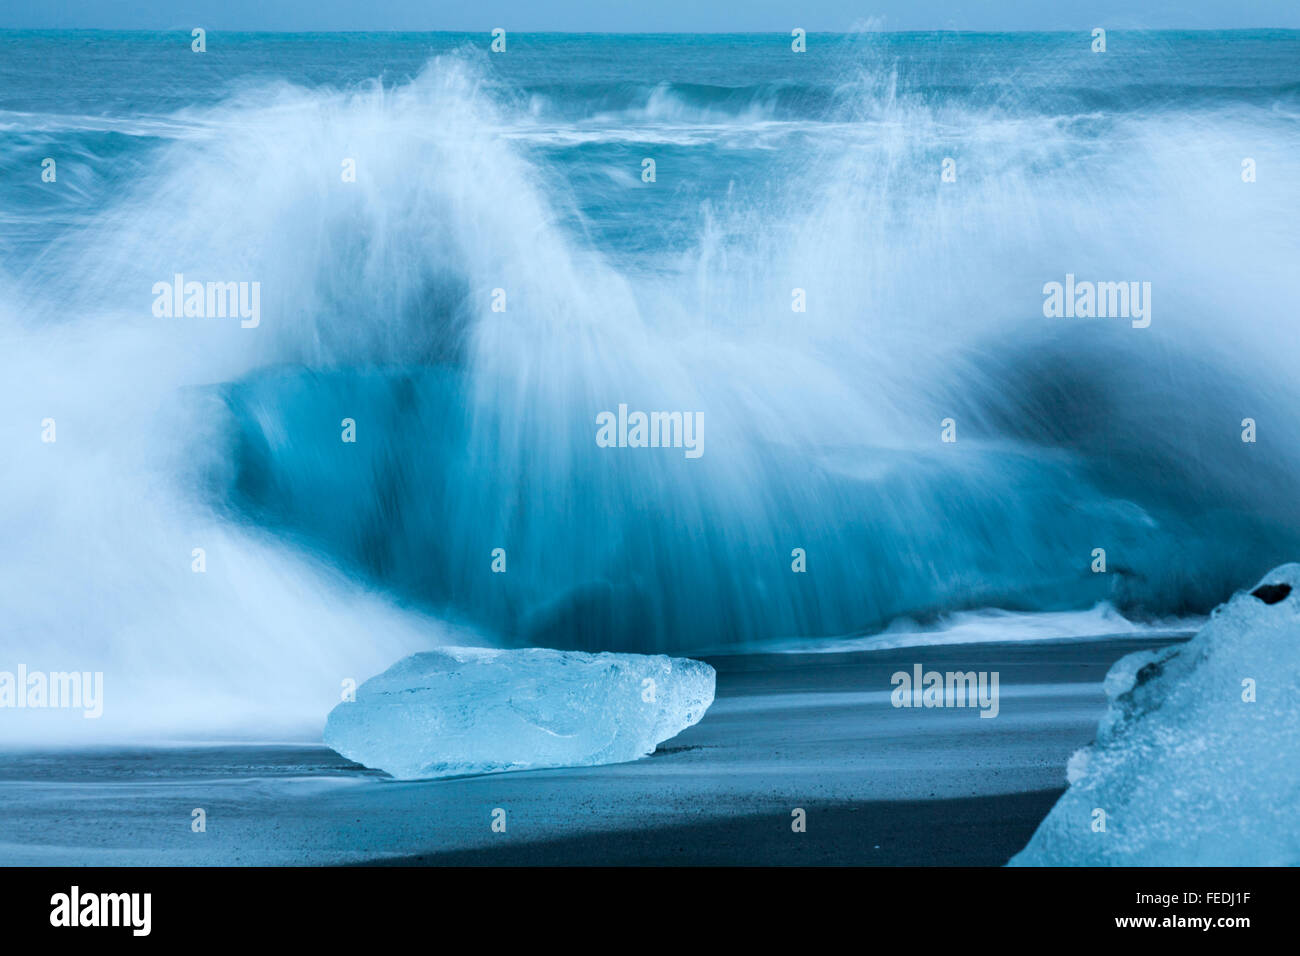 Une longue exposition de vagues déferlaient sur blocs de glace contrastant avec le sable noir à Jokulsarlon Glacial beach, plage du diamant, de l'Islande en Janvier Banque D'Images